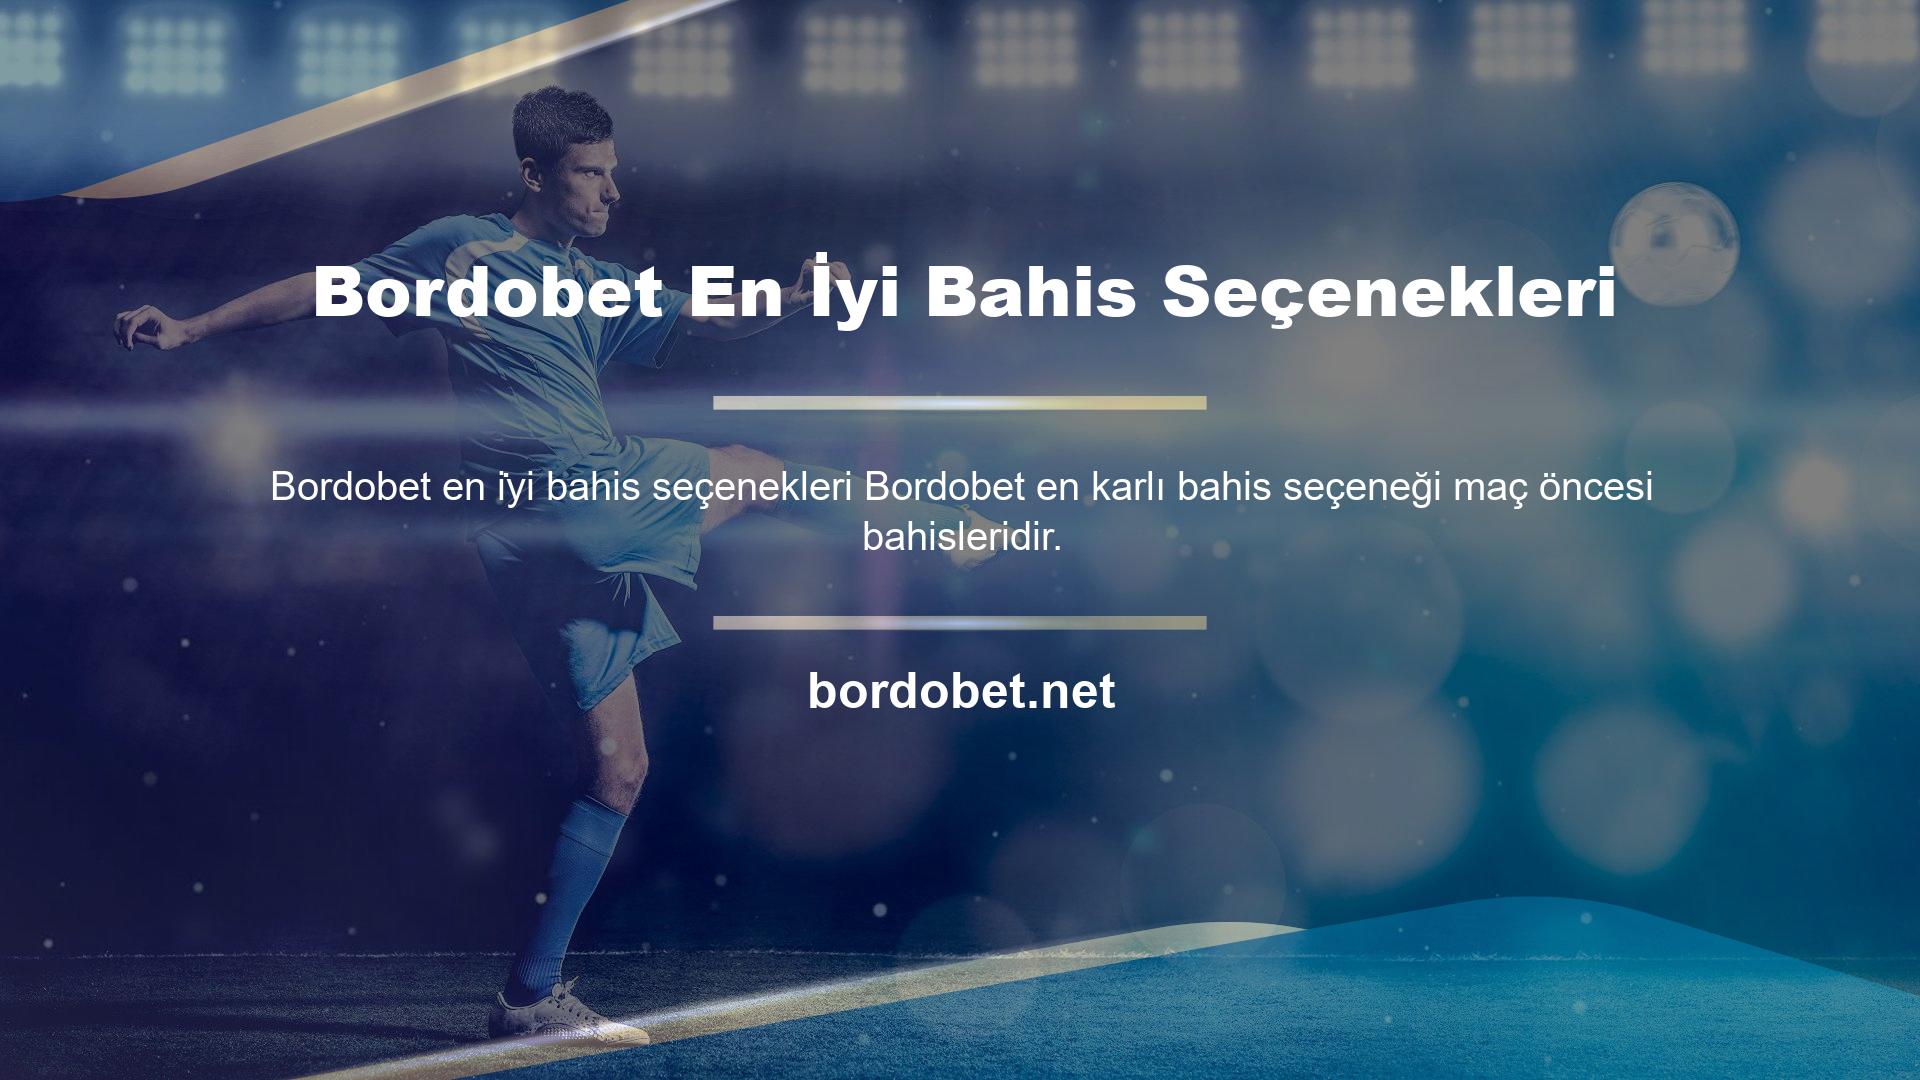 Bordobet internet sitesi, üyelere sağladığı gelirlerde tüm spor takip siteleri arasında ilk sırada yer almakta ve alanında lider olduğunu kanıtlamaktadır